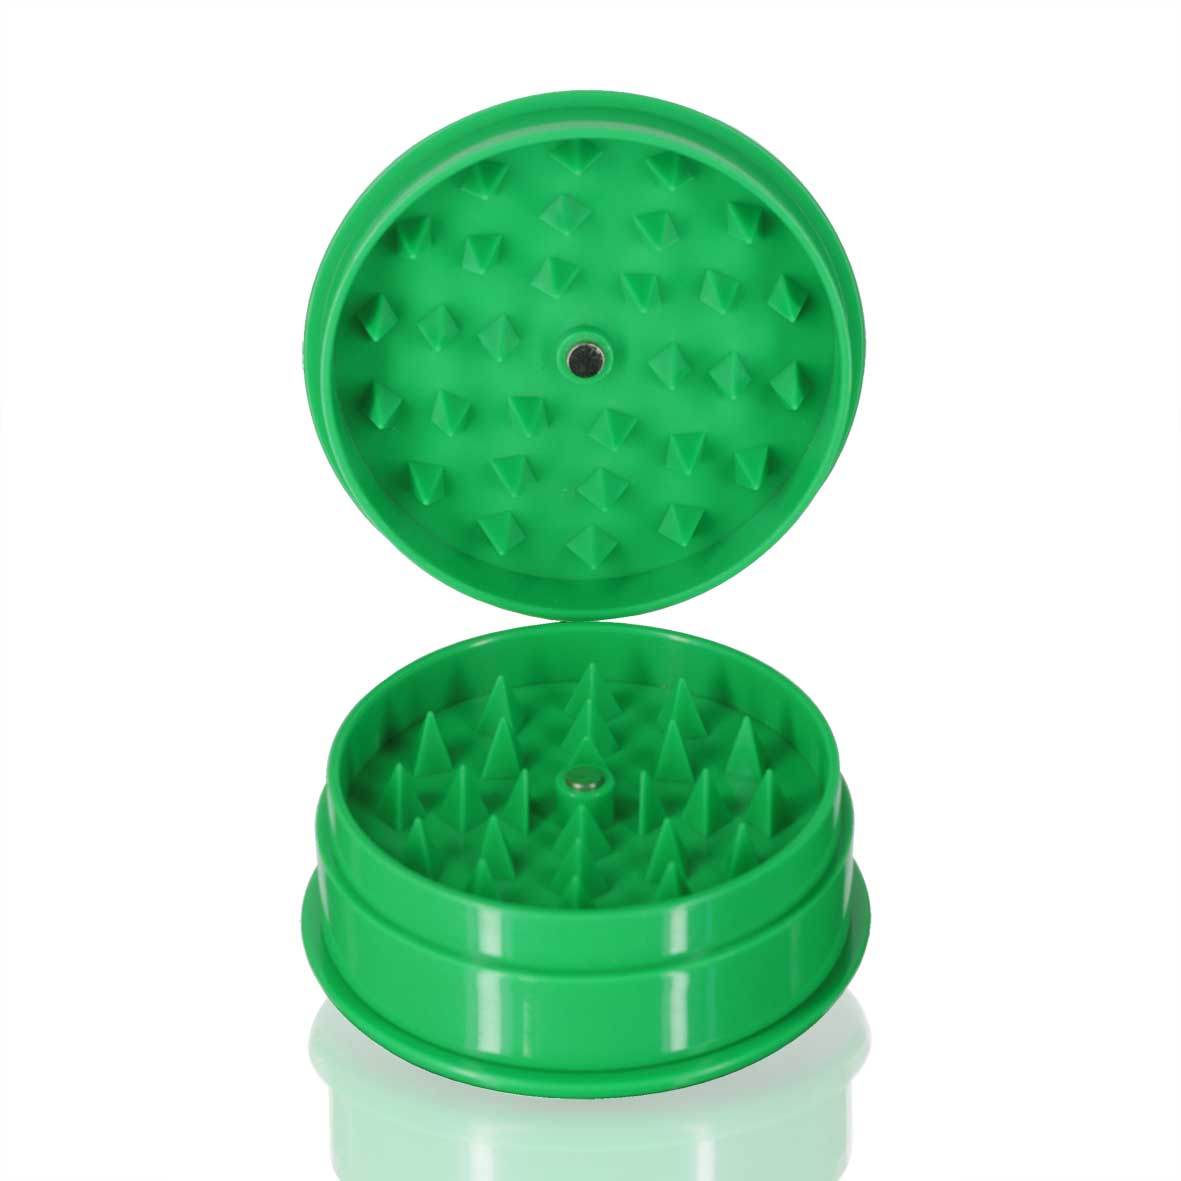 Plastic Grinder Round - Green